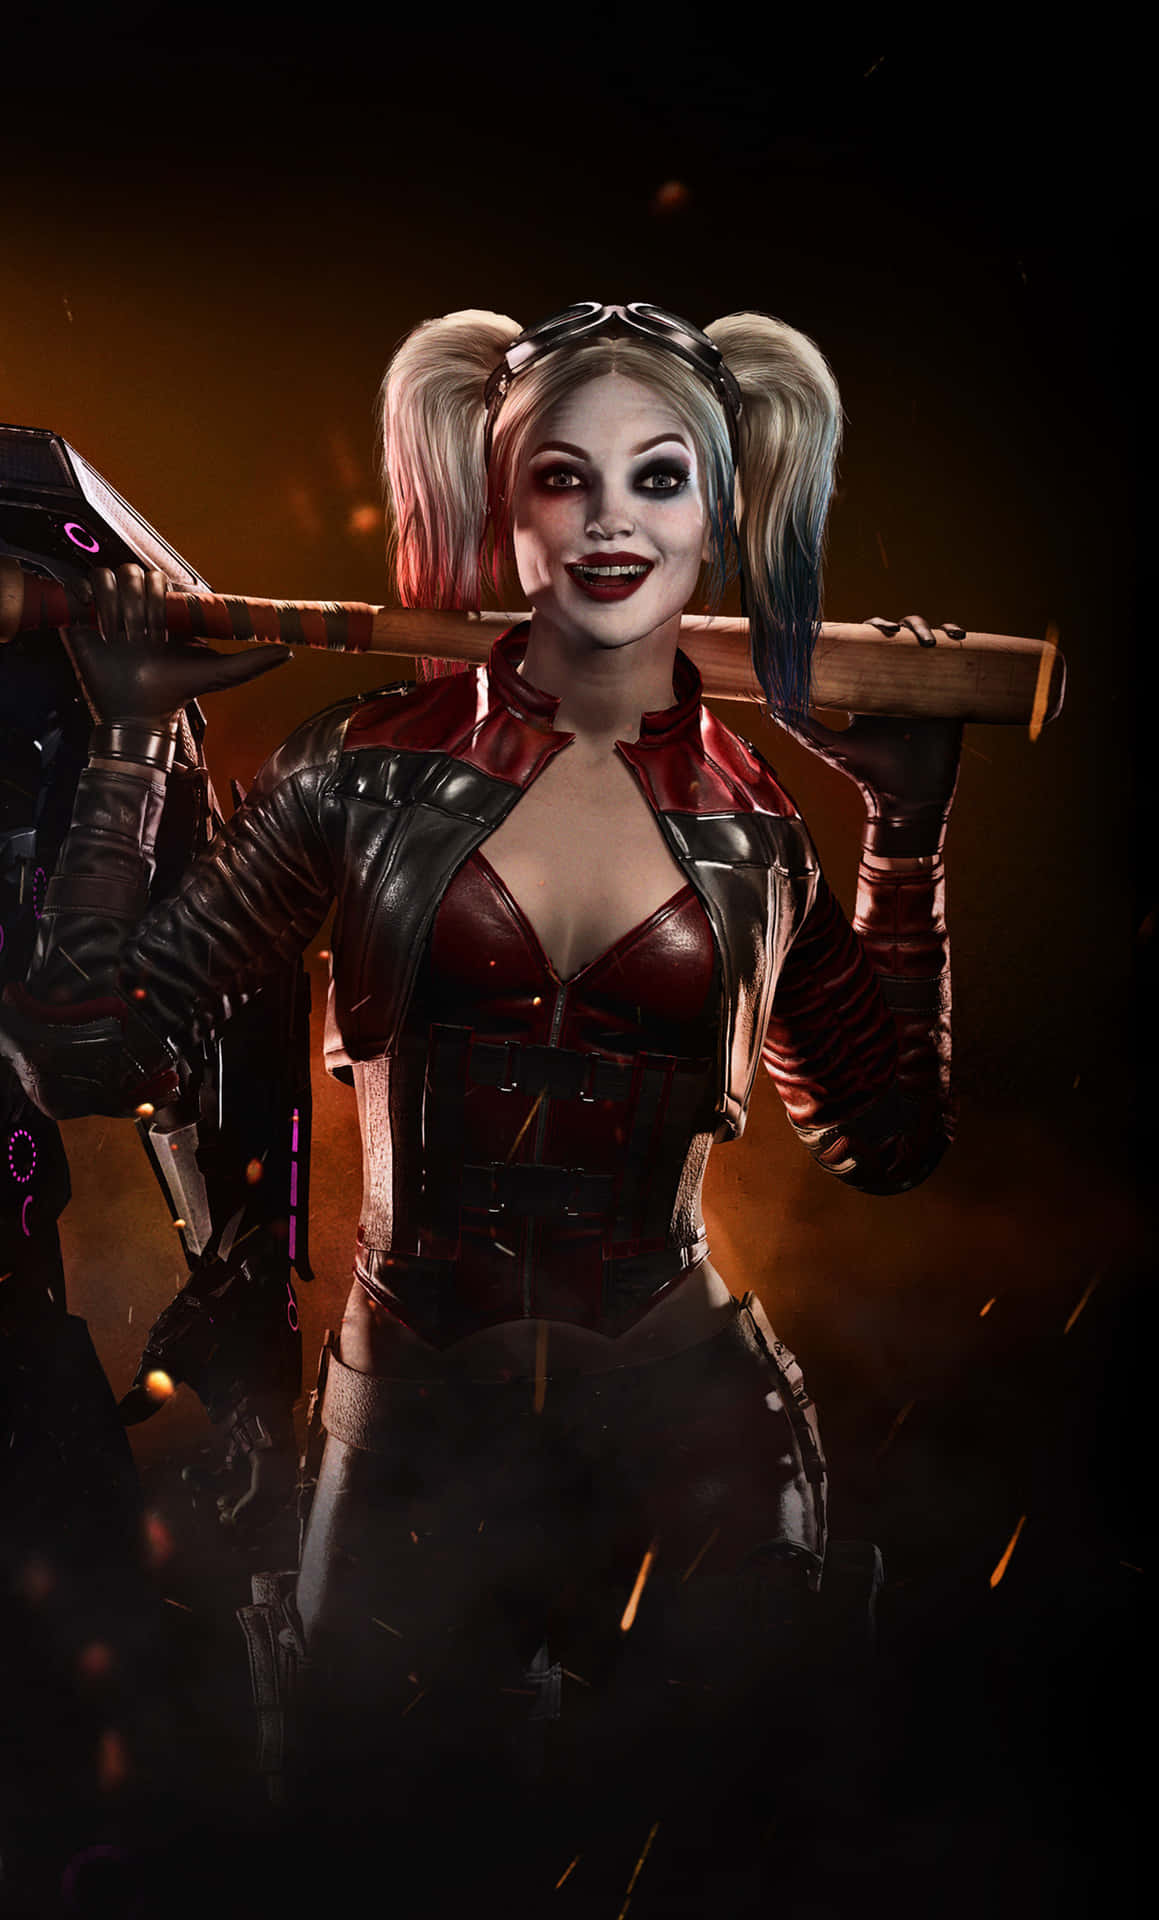 Harley Quinn Injustice 2 Dark Art Wallpaper